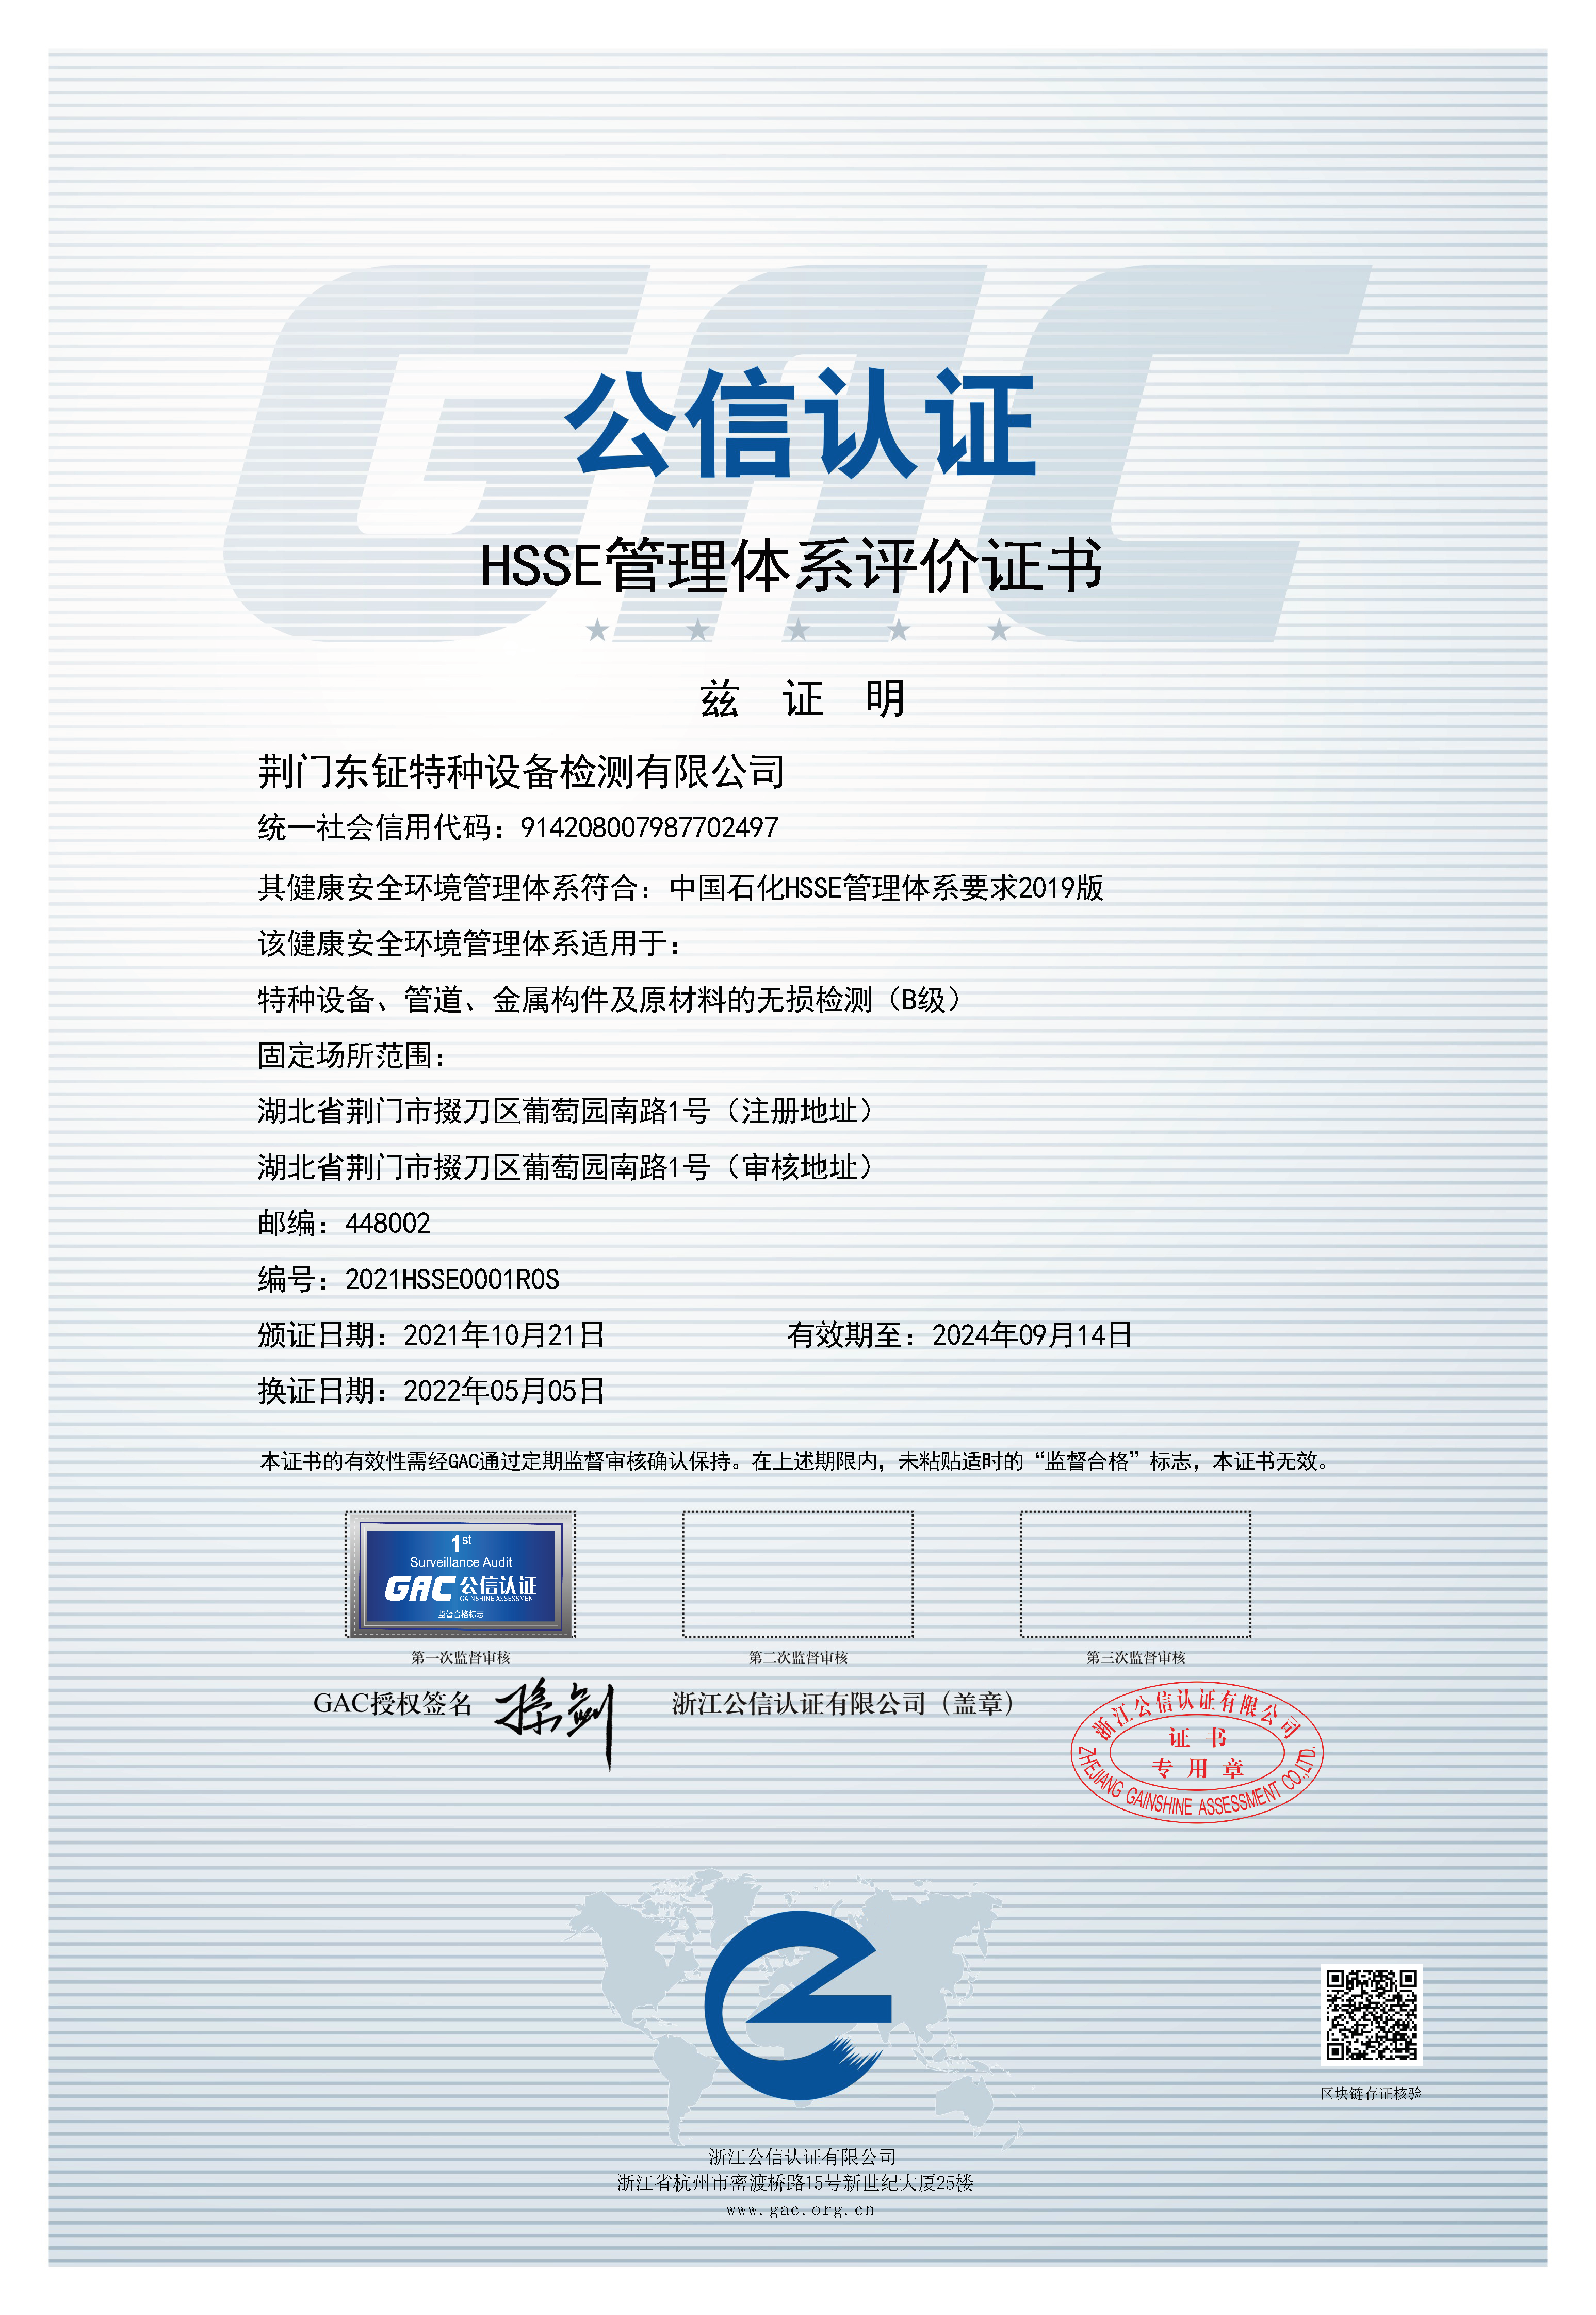 荆门东钲特种设备检测有限公司通过HSE管理体系认证